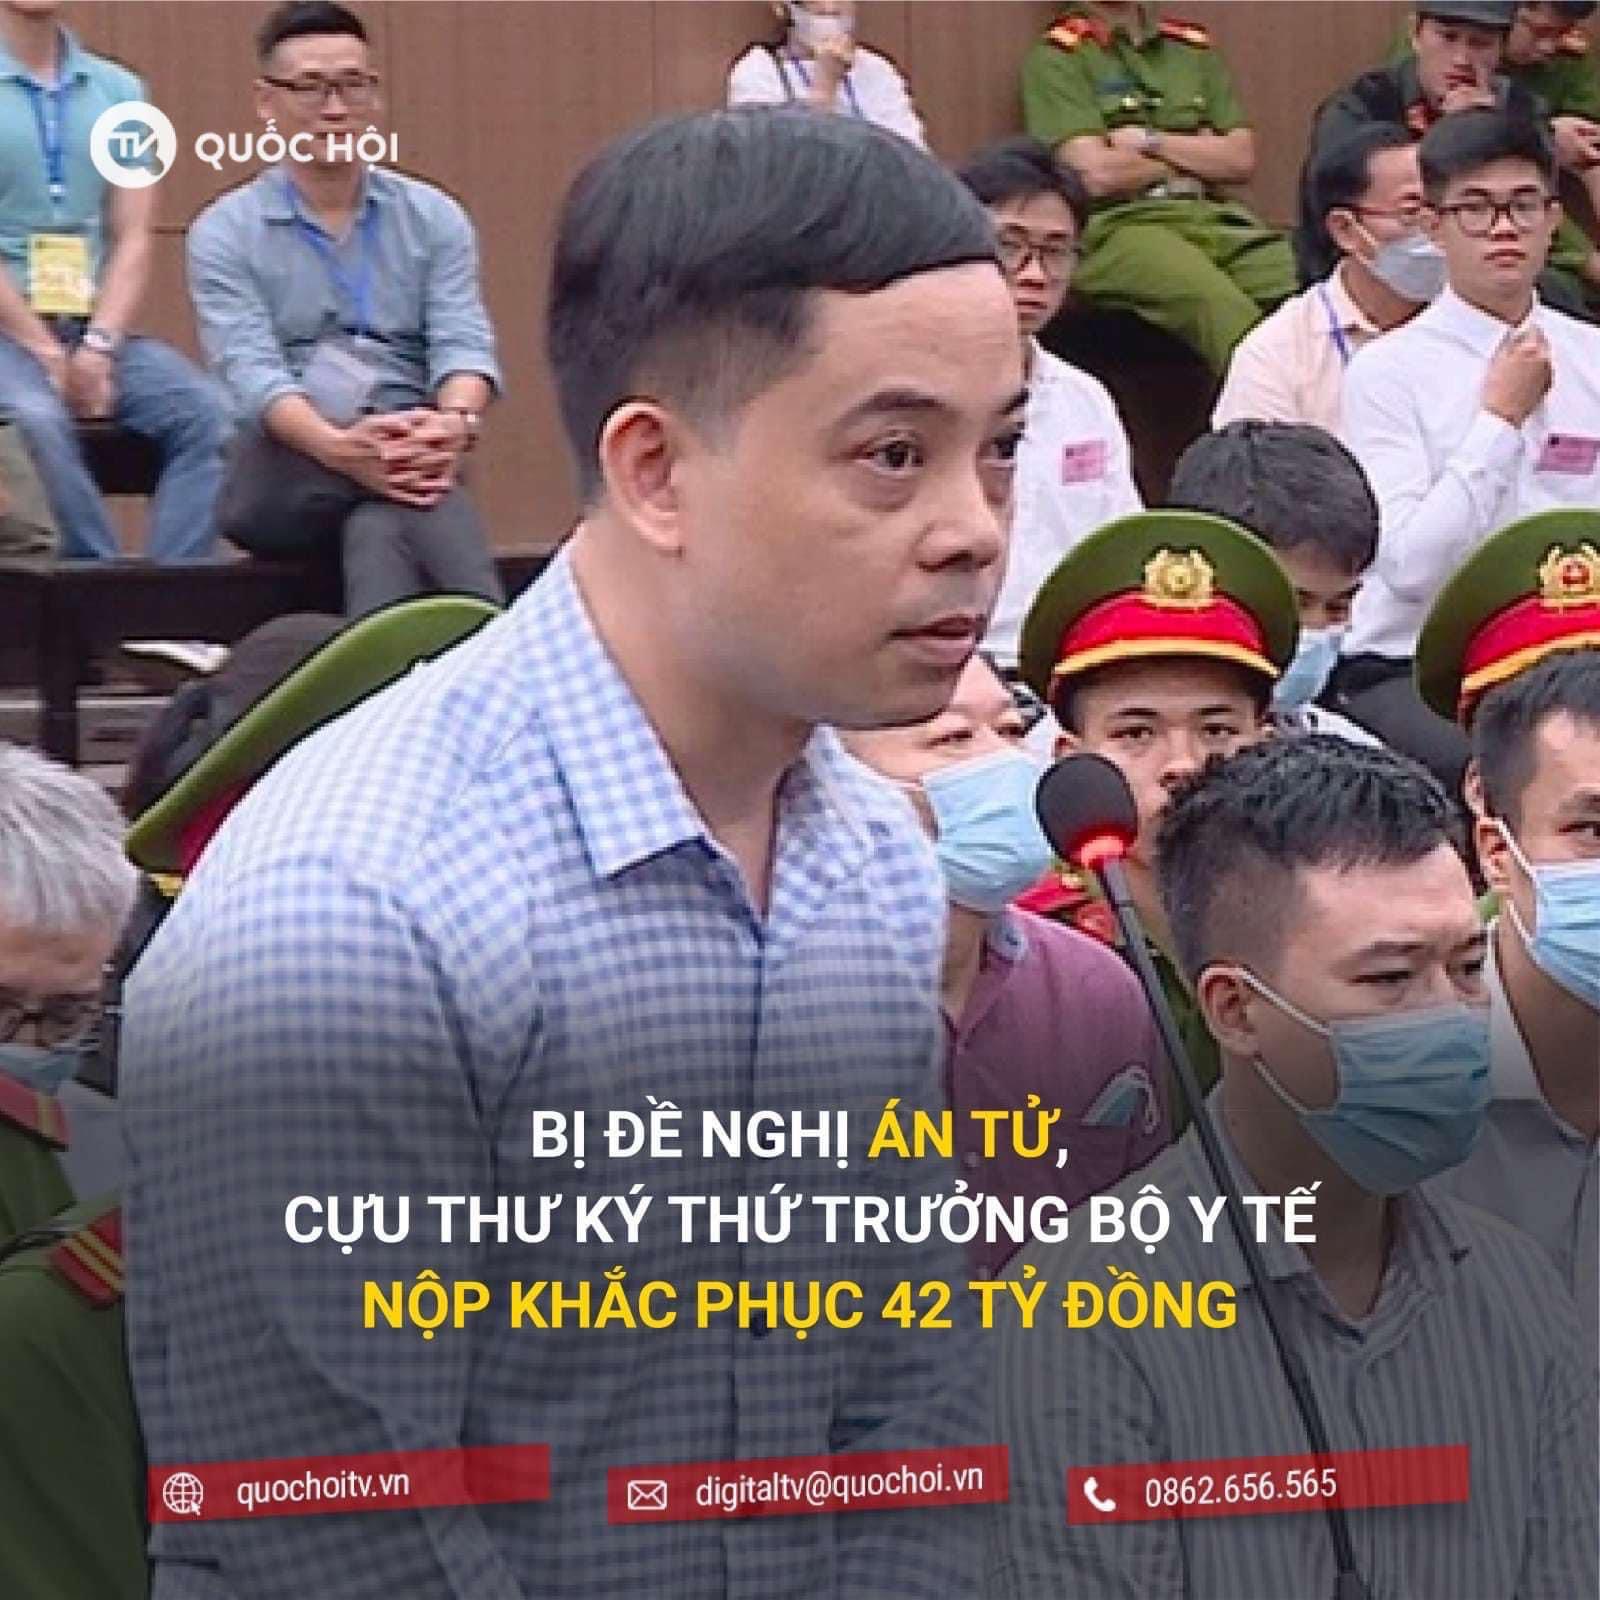 Nguyên tắc suy đoán vô tội được quy định như thế nào trong pháp luật Việt Nam ?